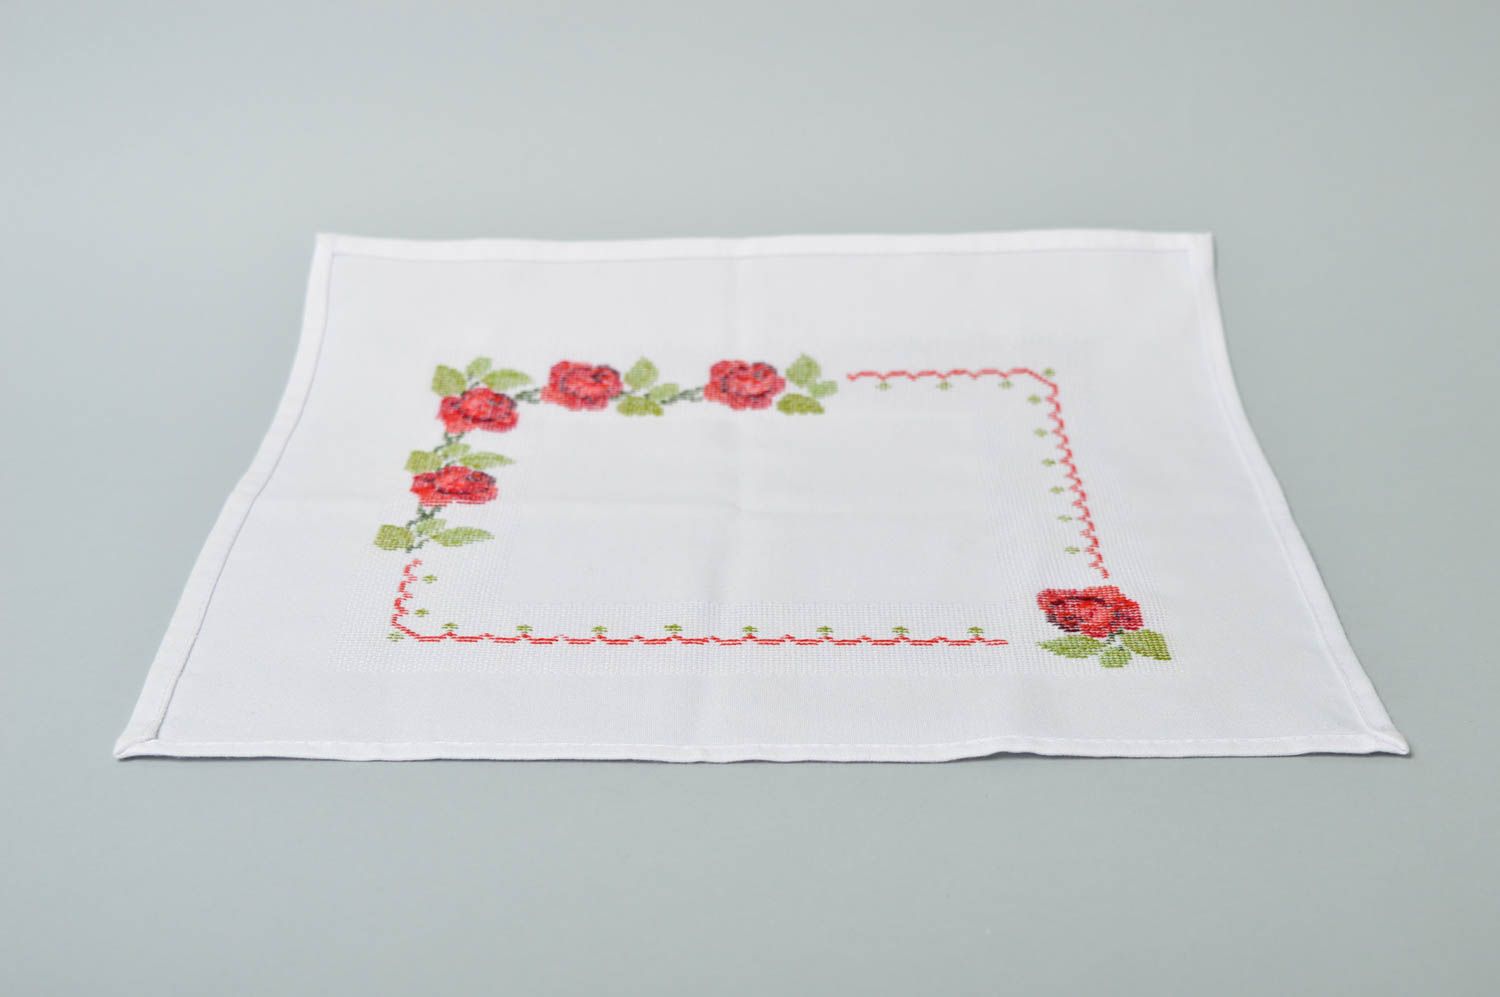 Handmade cute unusual napkin table decor ideas beautiful embroidered napkin photo 4